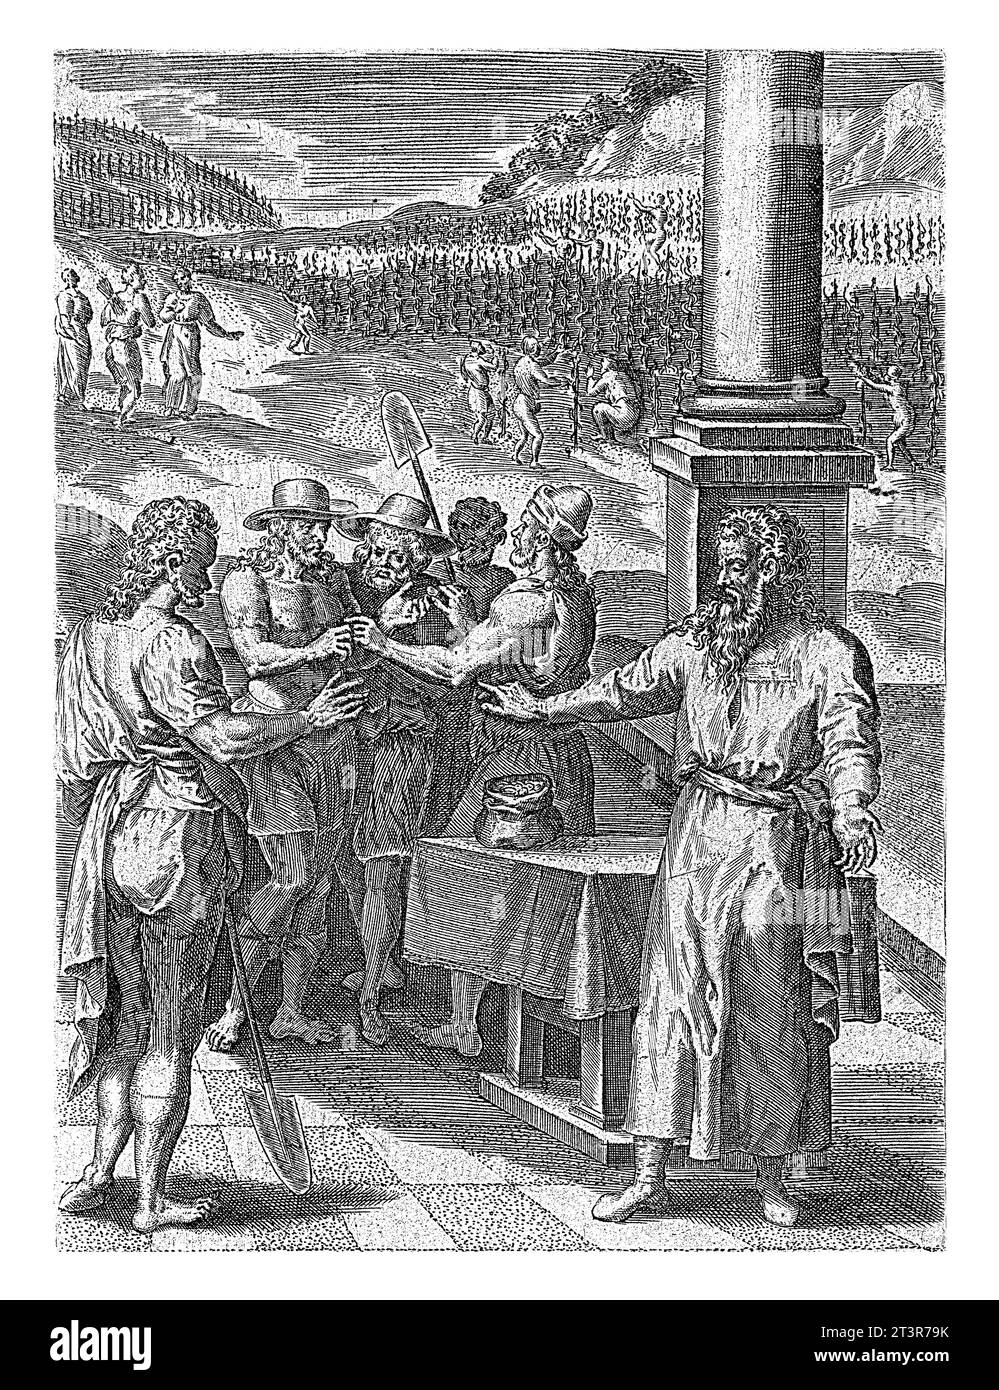 Gleichnis von den Arbeitern im Weinberg, Abraham de Bruyn, nach Crispijn van den Broeck, 1583 Buch Illustration für das Gleichnis von den Arbeitern im Weinberg Stockfoto